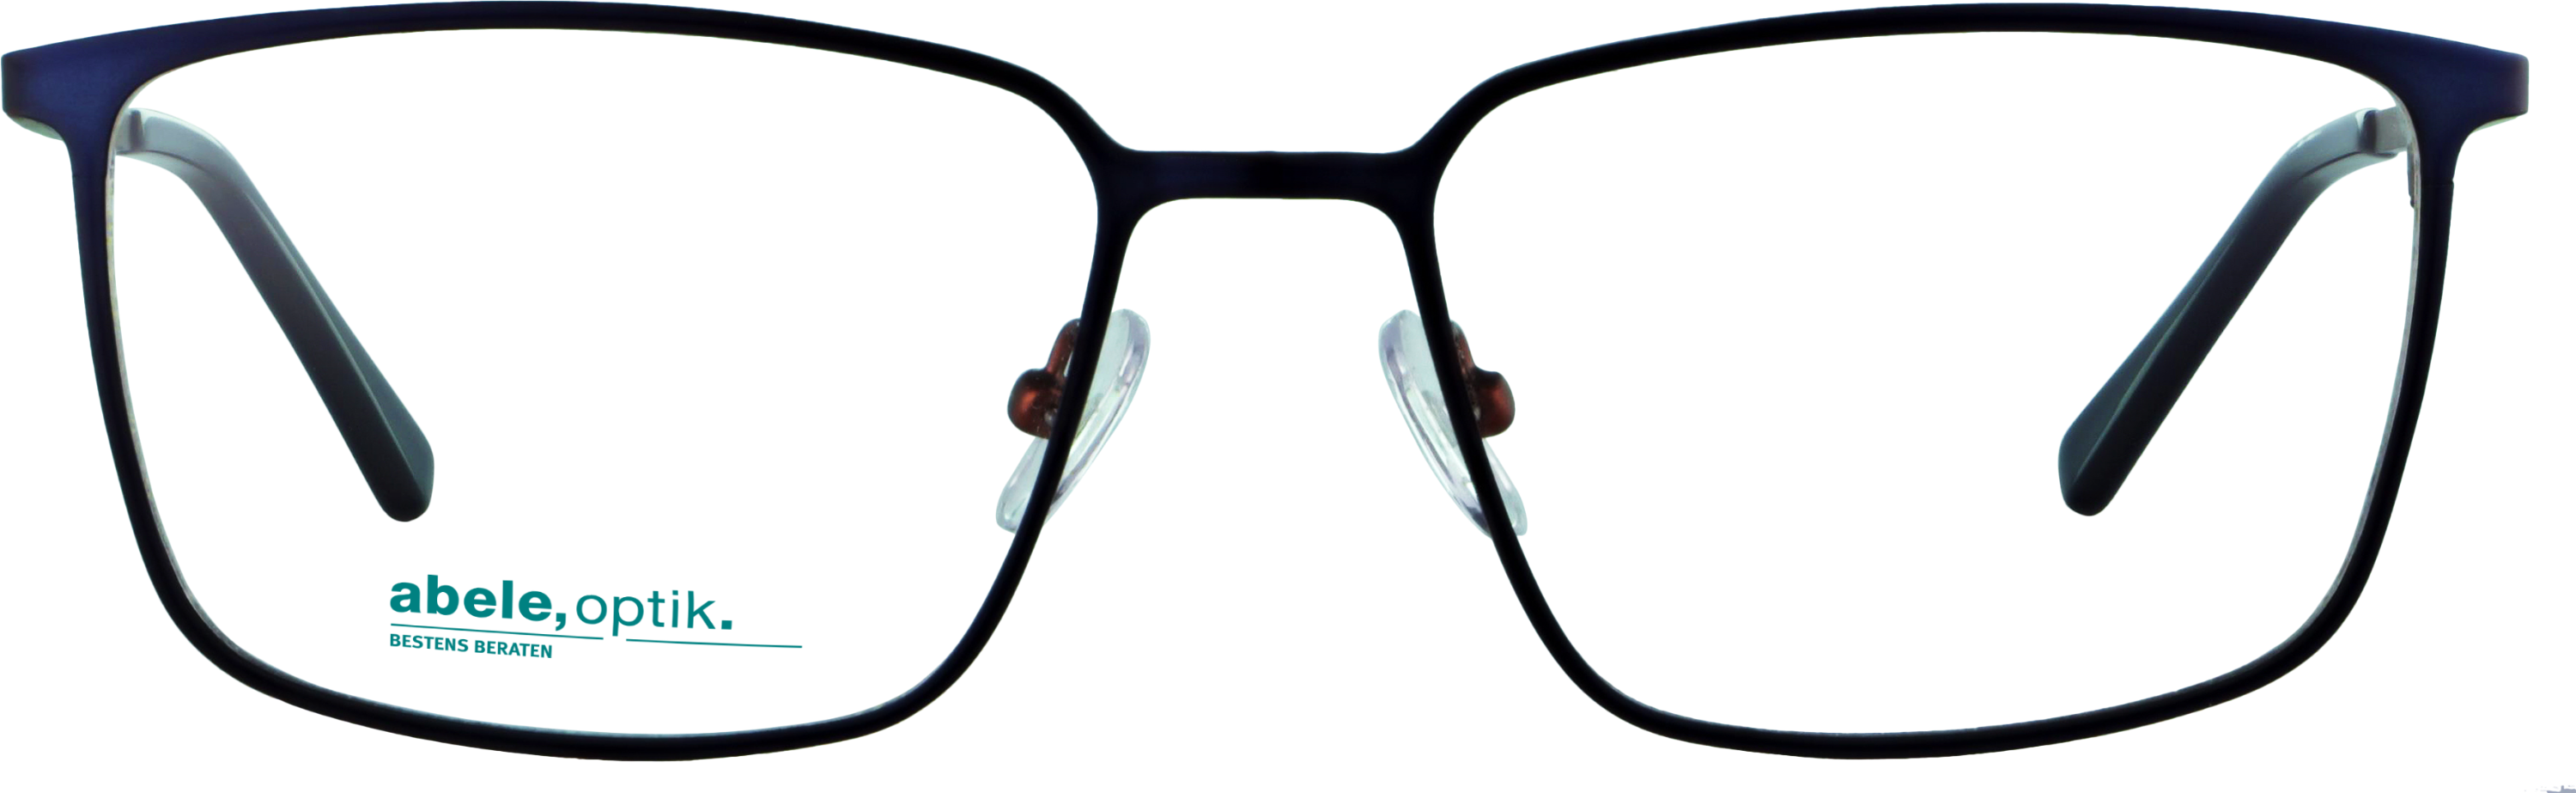 Das Bild zeigt die Korrektionsbrille 143291 von der Marke Abele Optik in dunkelblau matt.